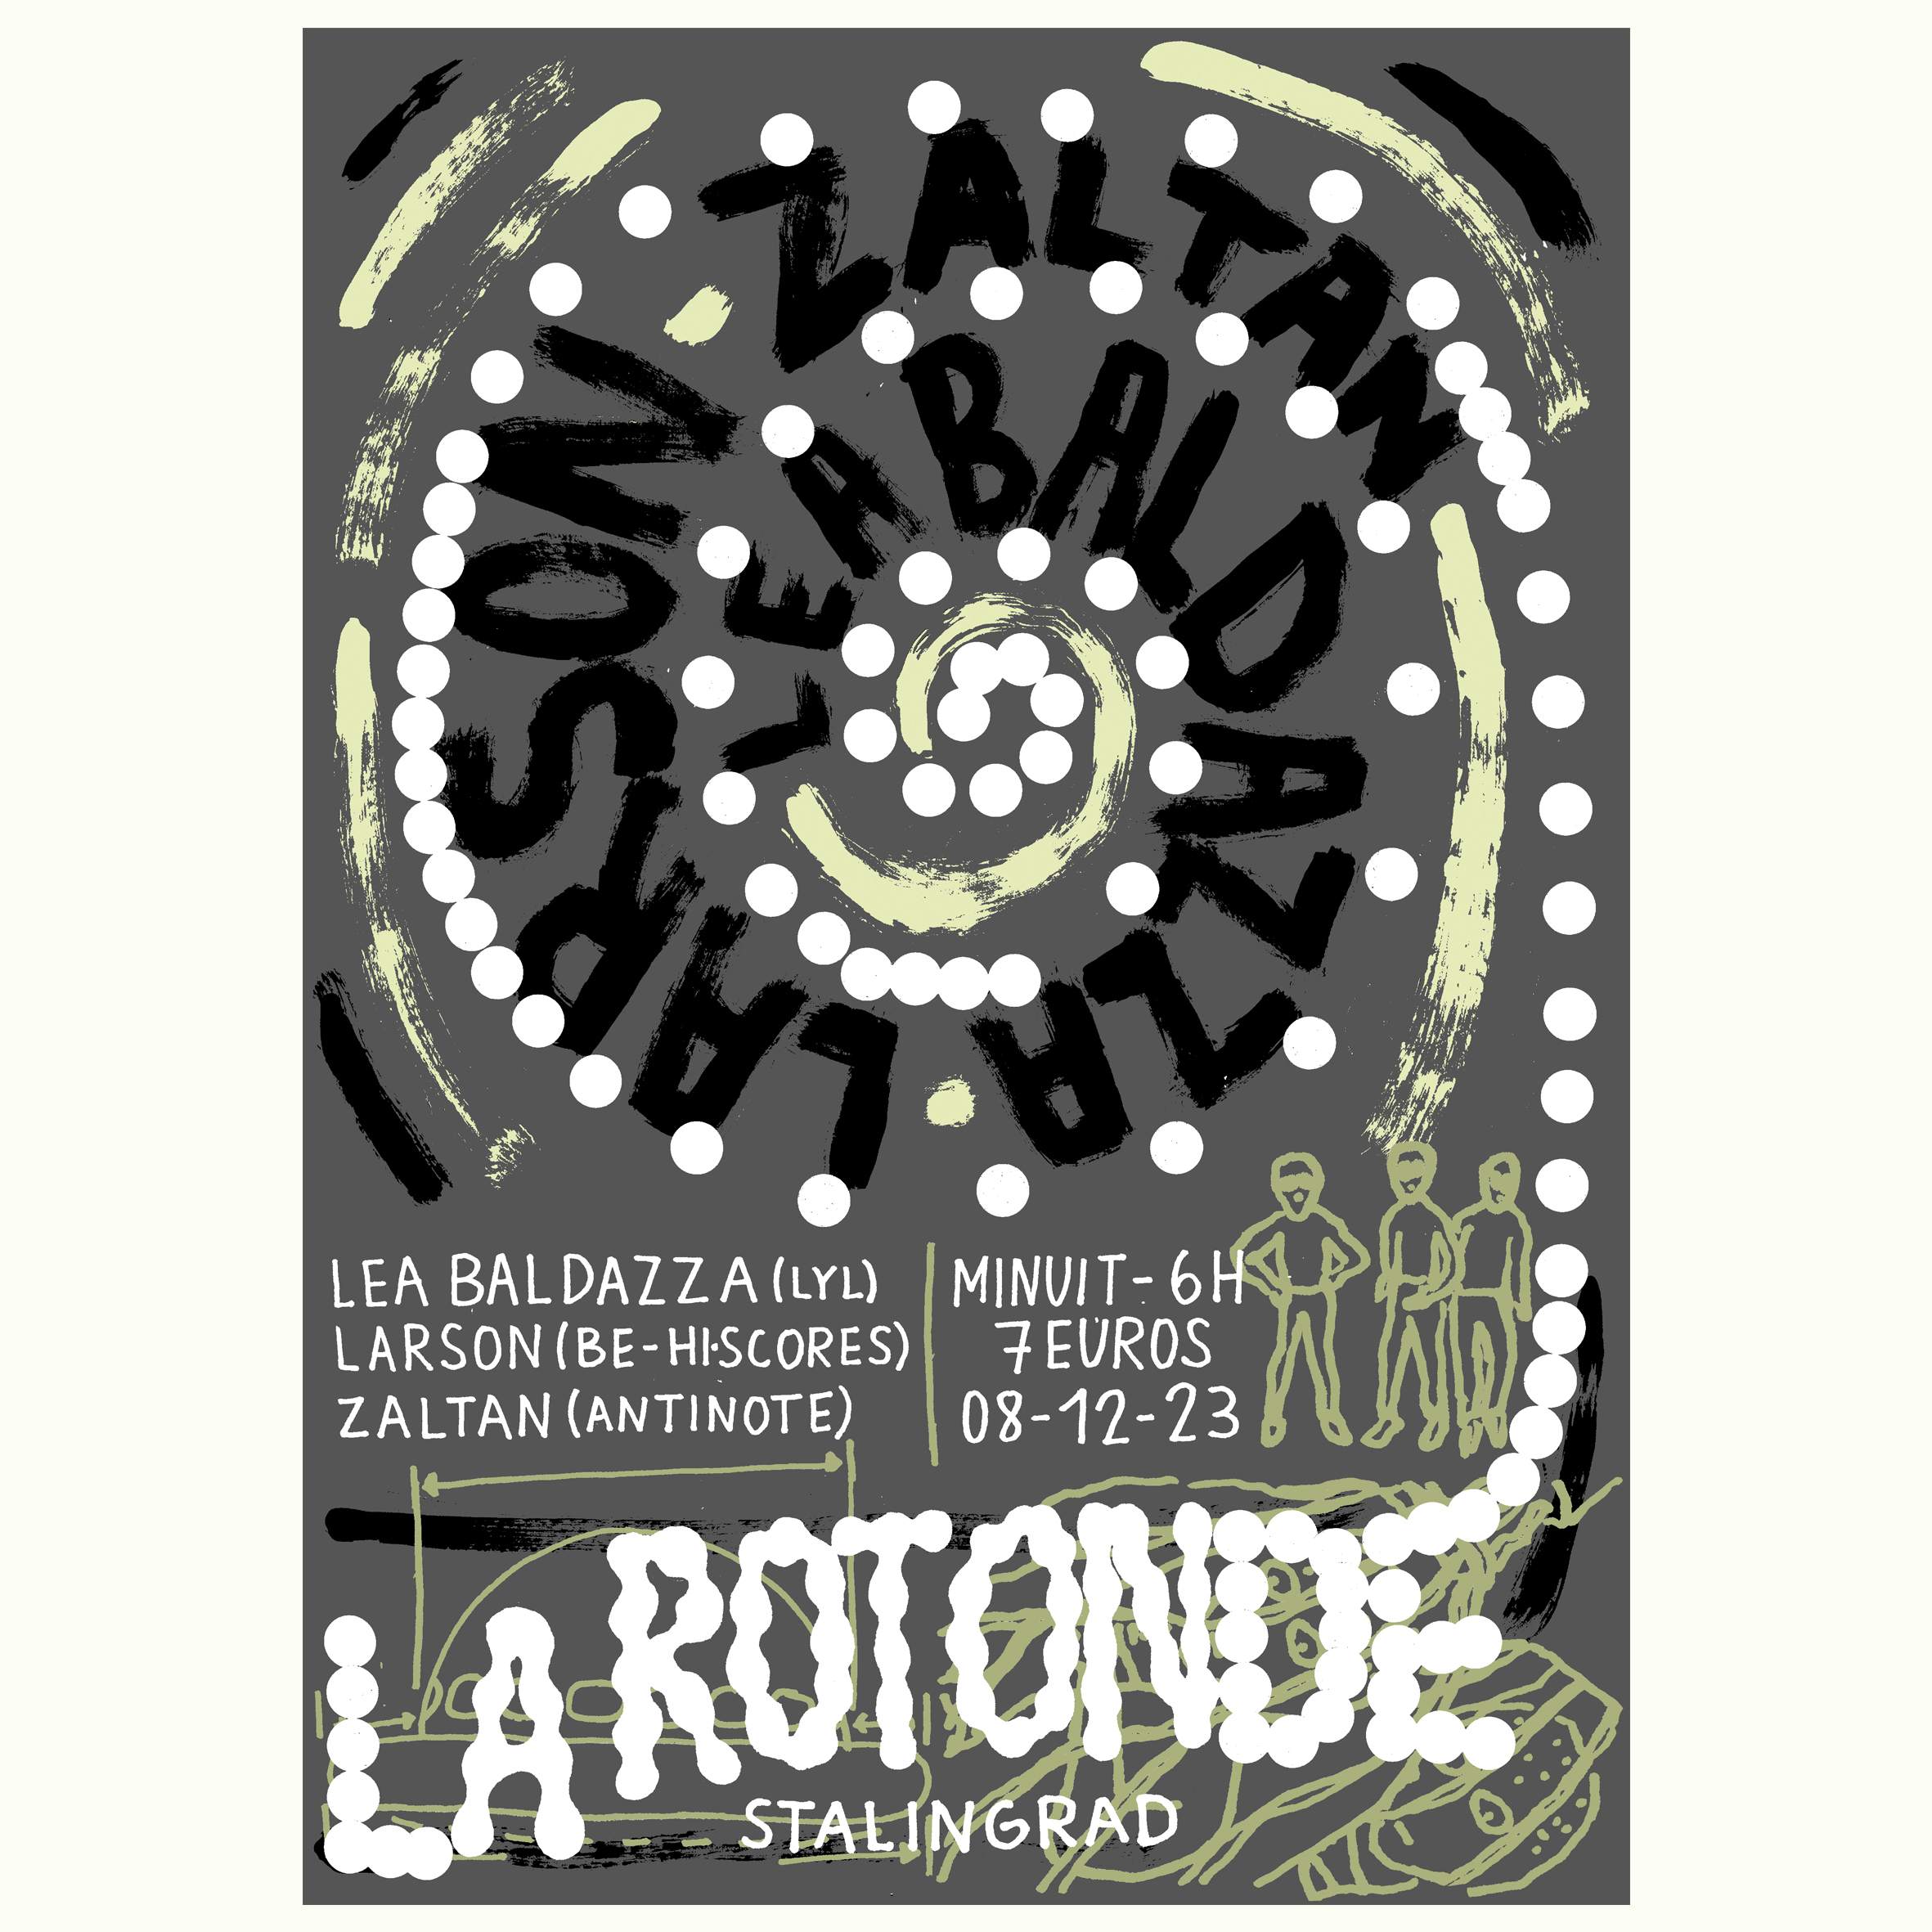 Antinote Party at La Rotonde - Página frontal